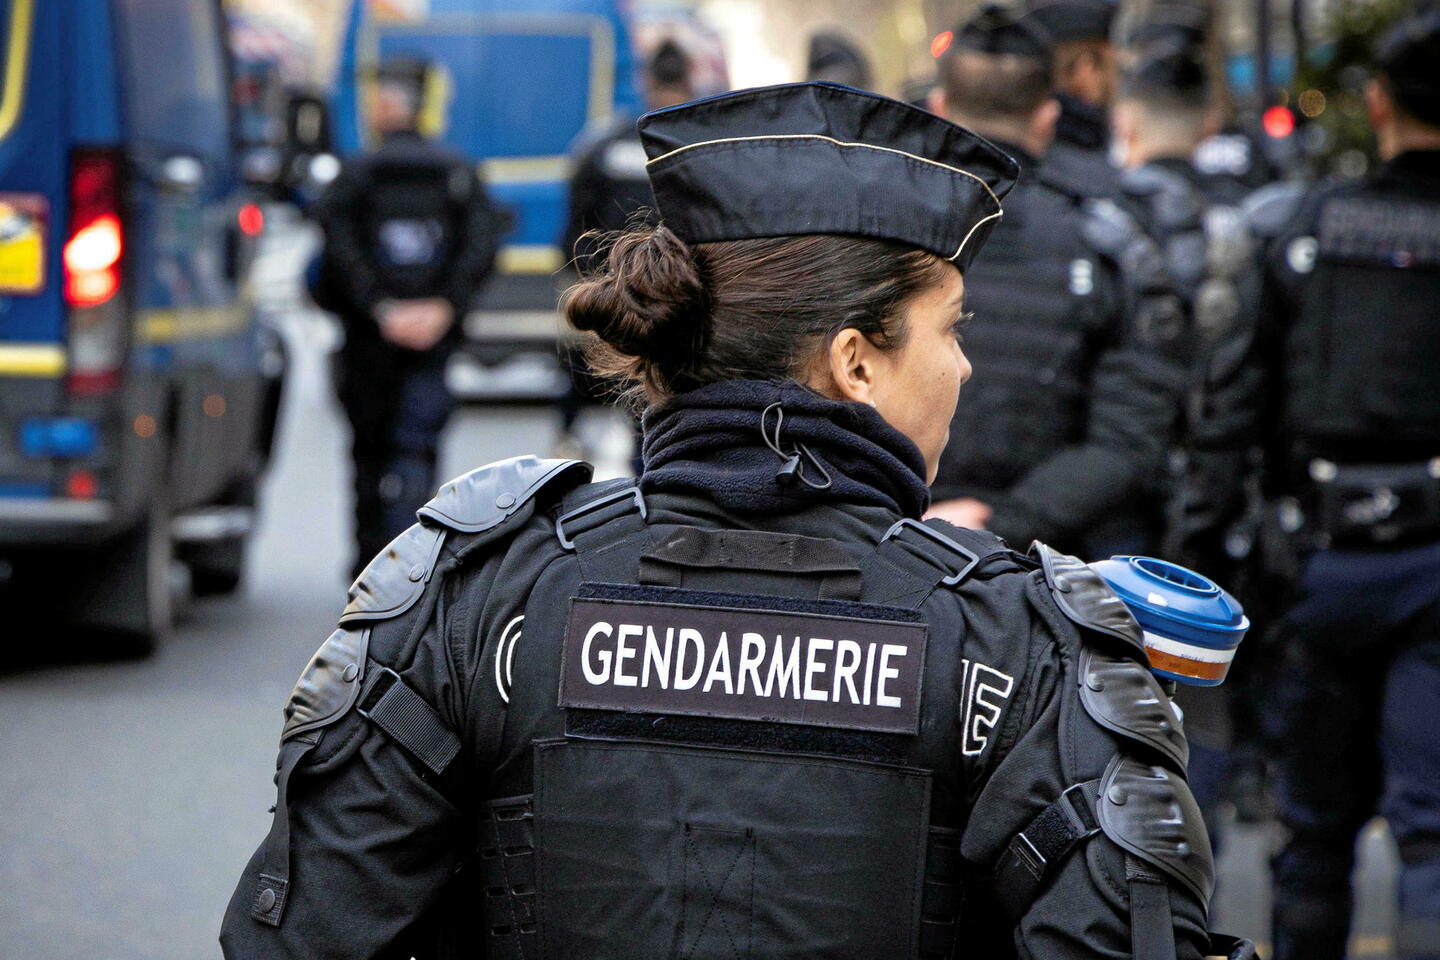 Cybersécurité : la gendarmerie teste son personnel avant les JO de Paris, 10 % échouent